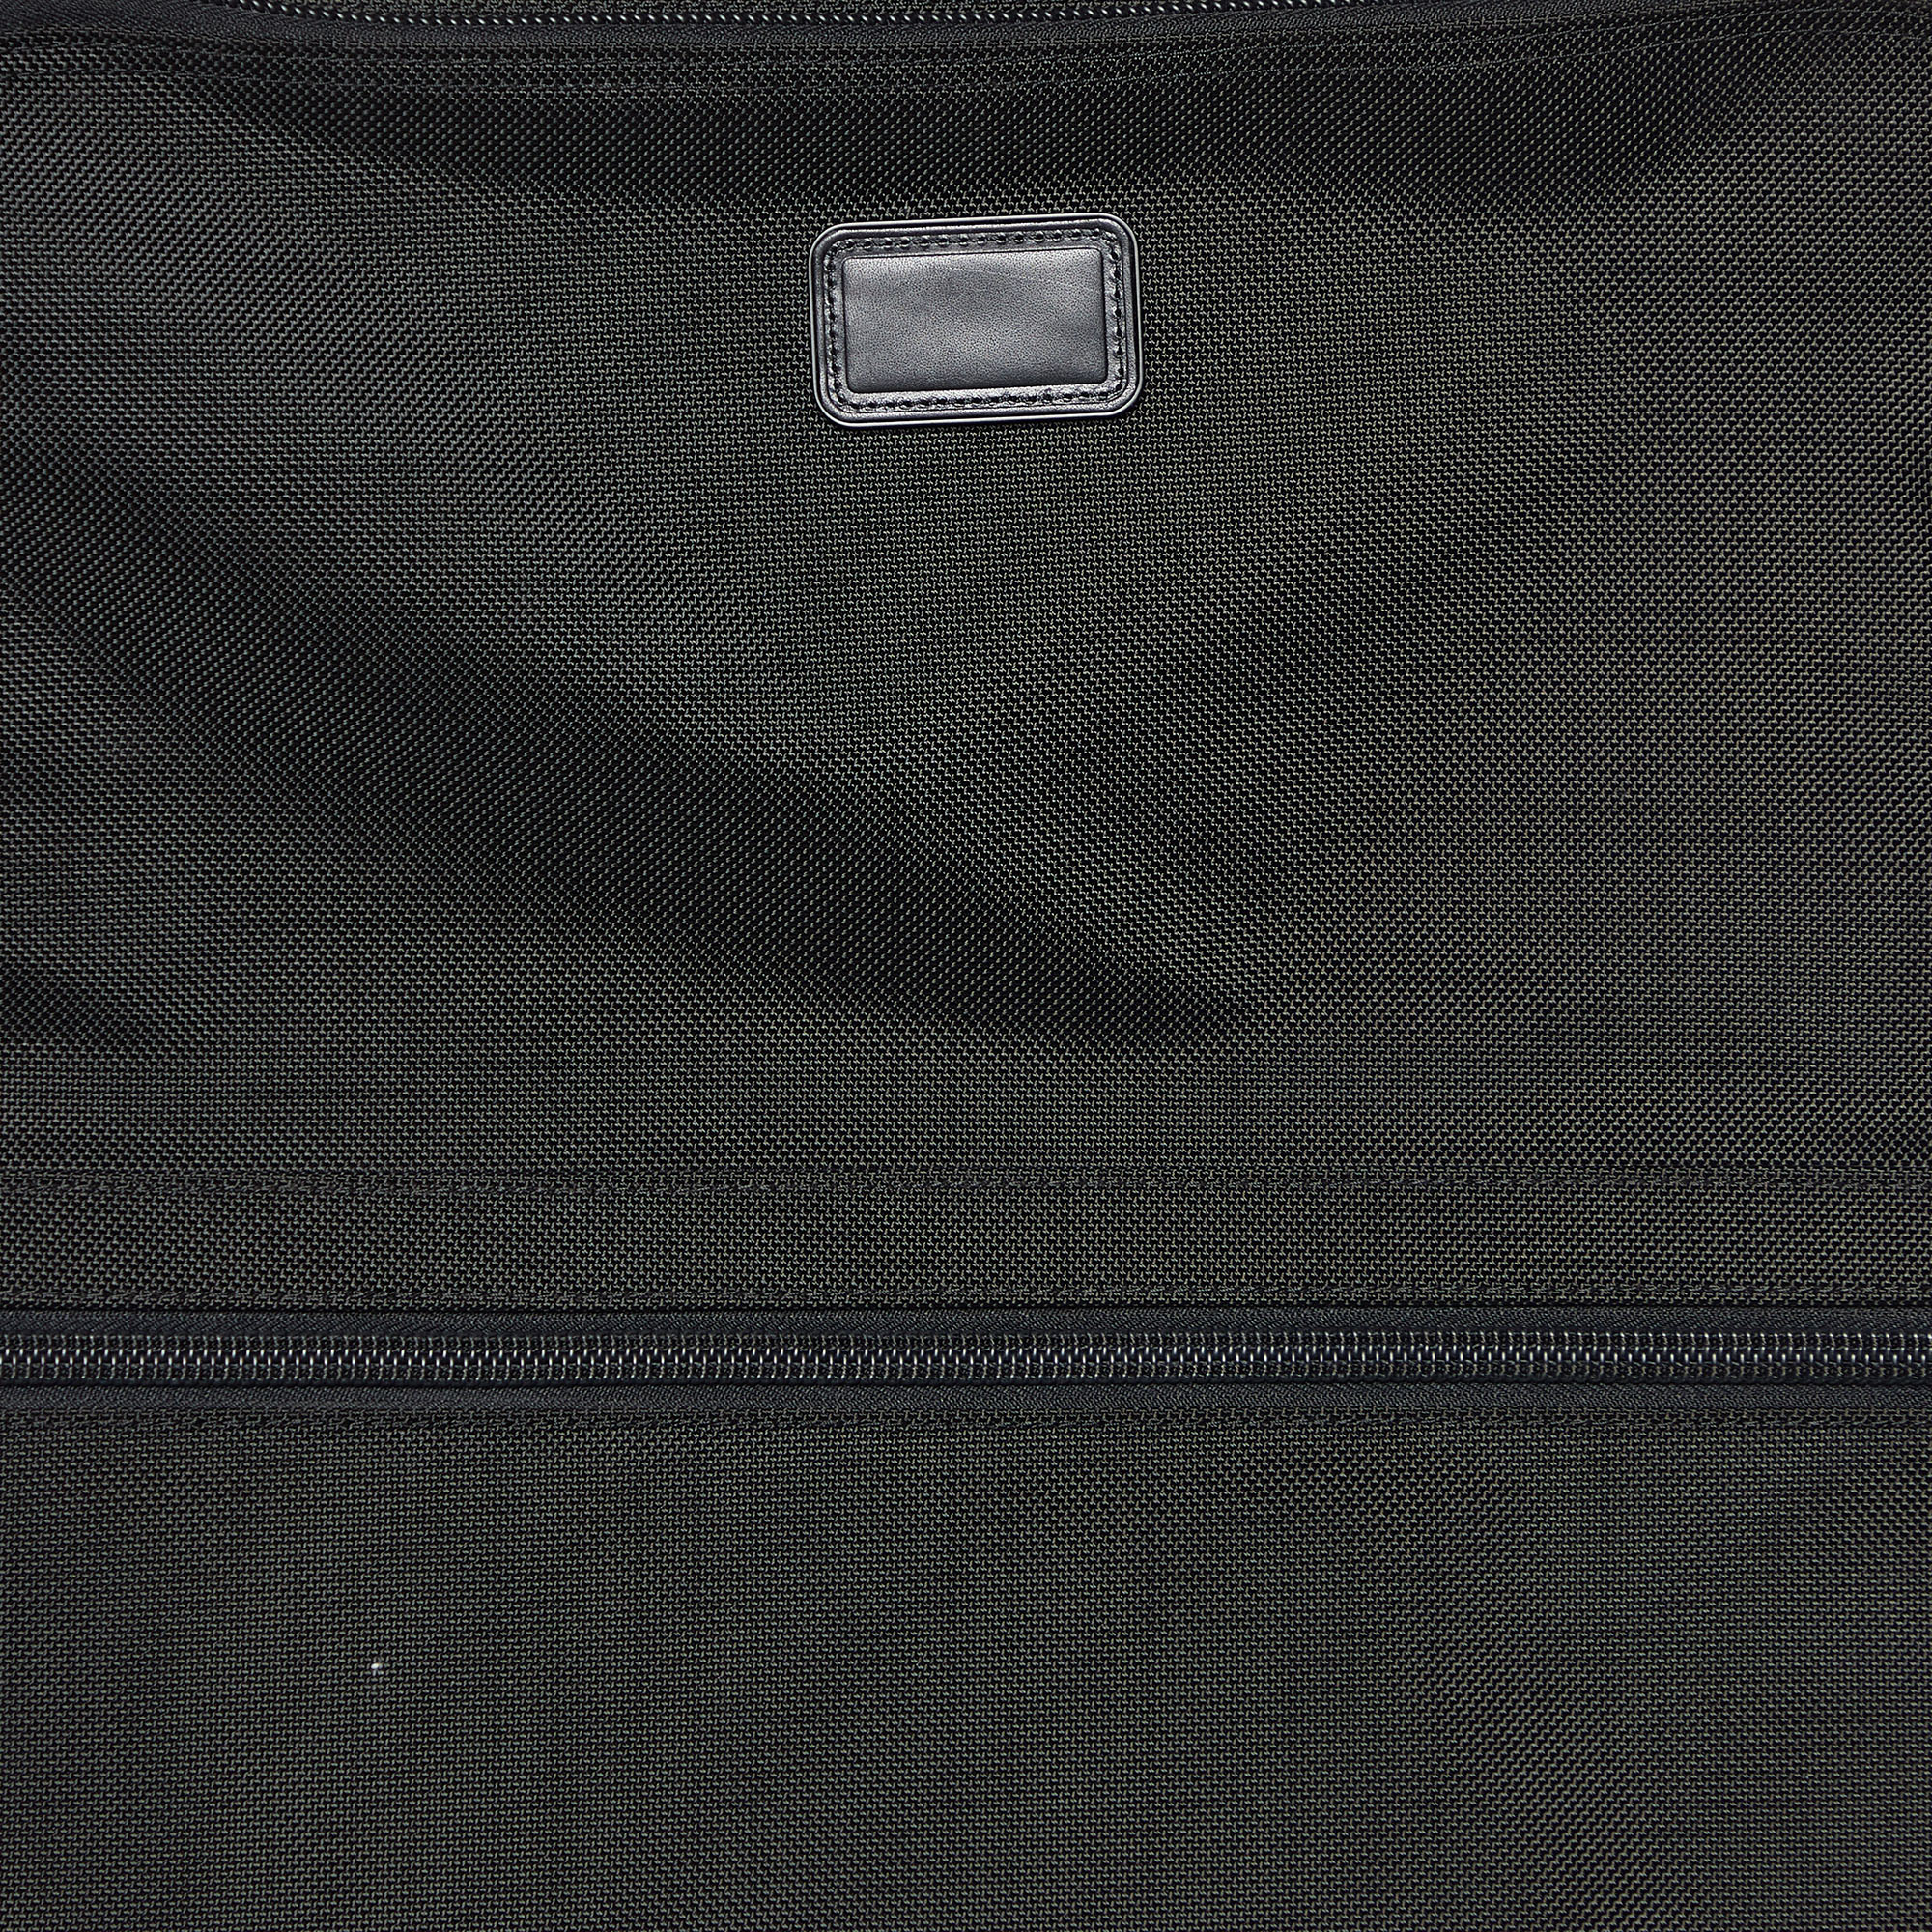 TUMI Black Nylon 2 Wheeled Alpha Expandable Luggage